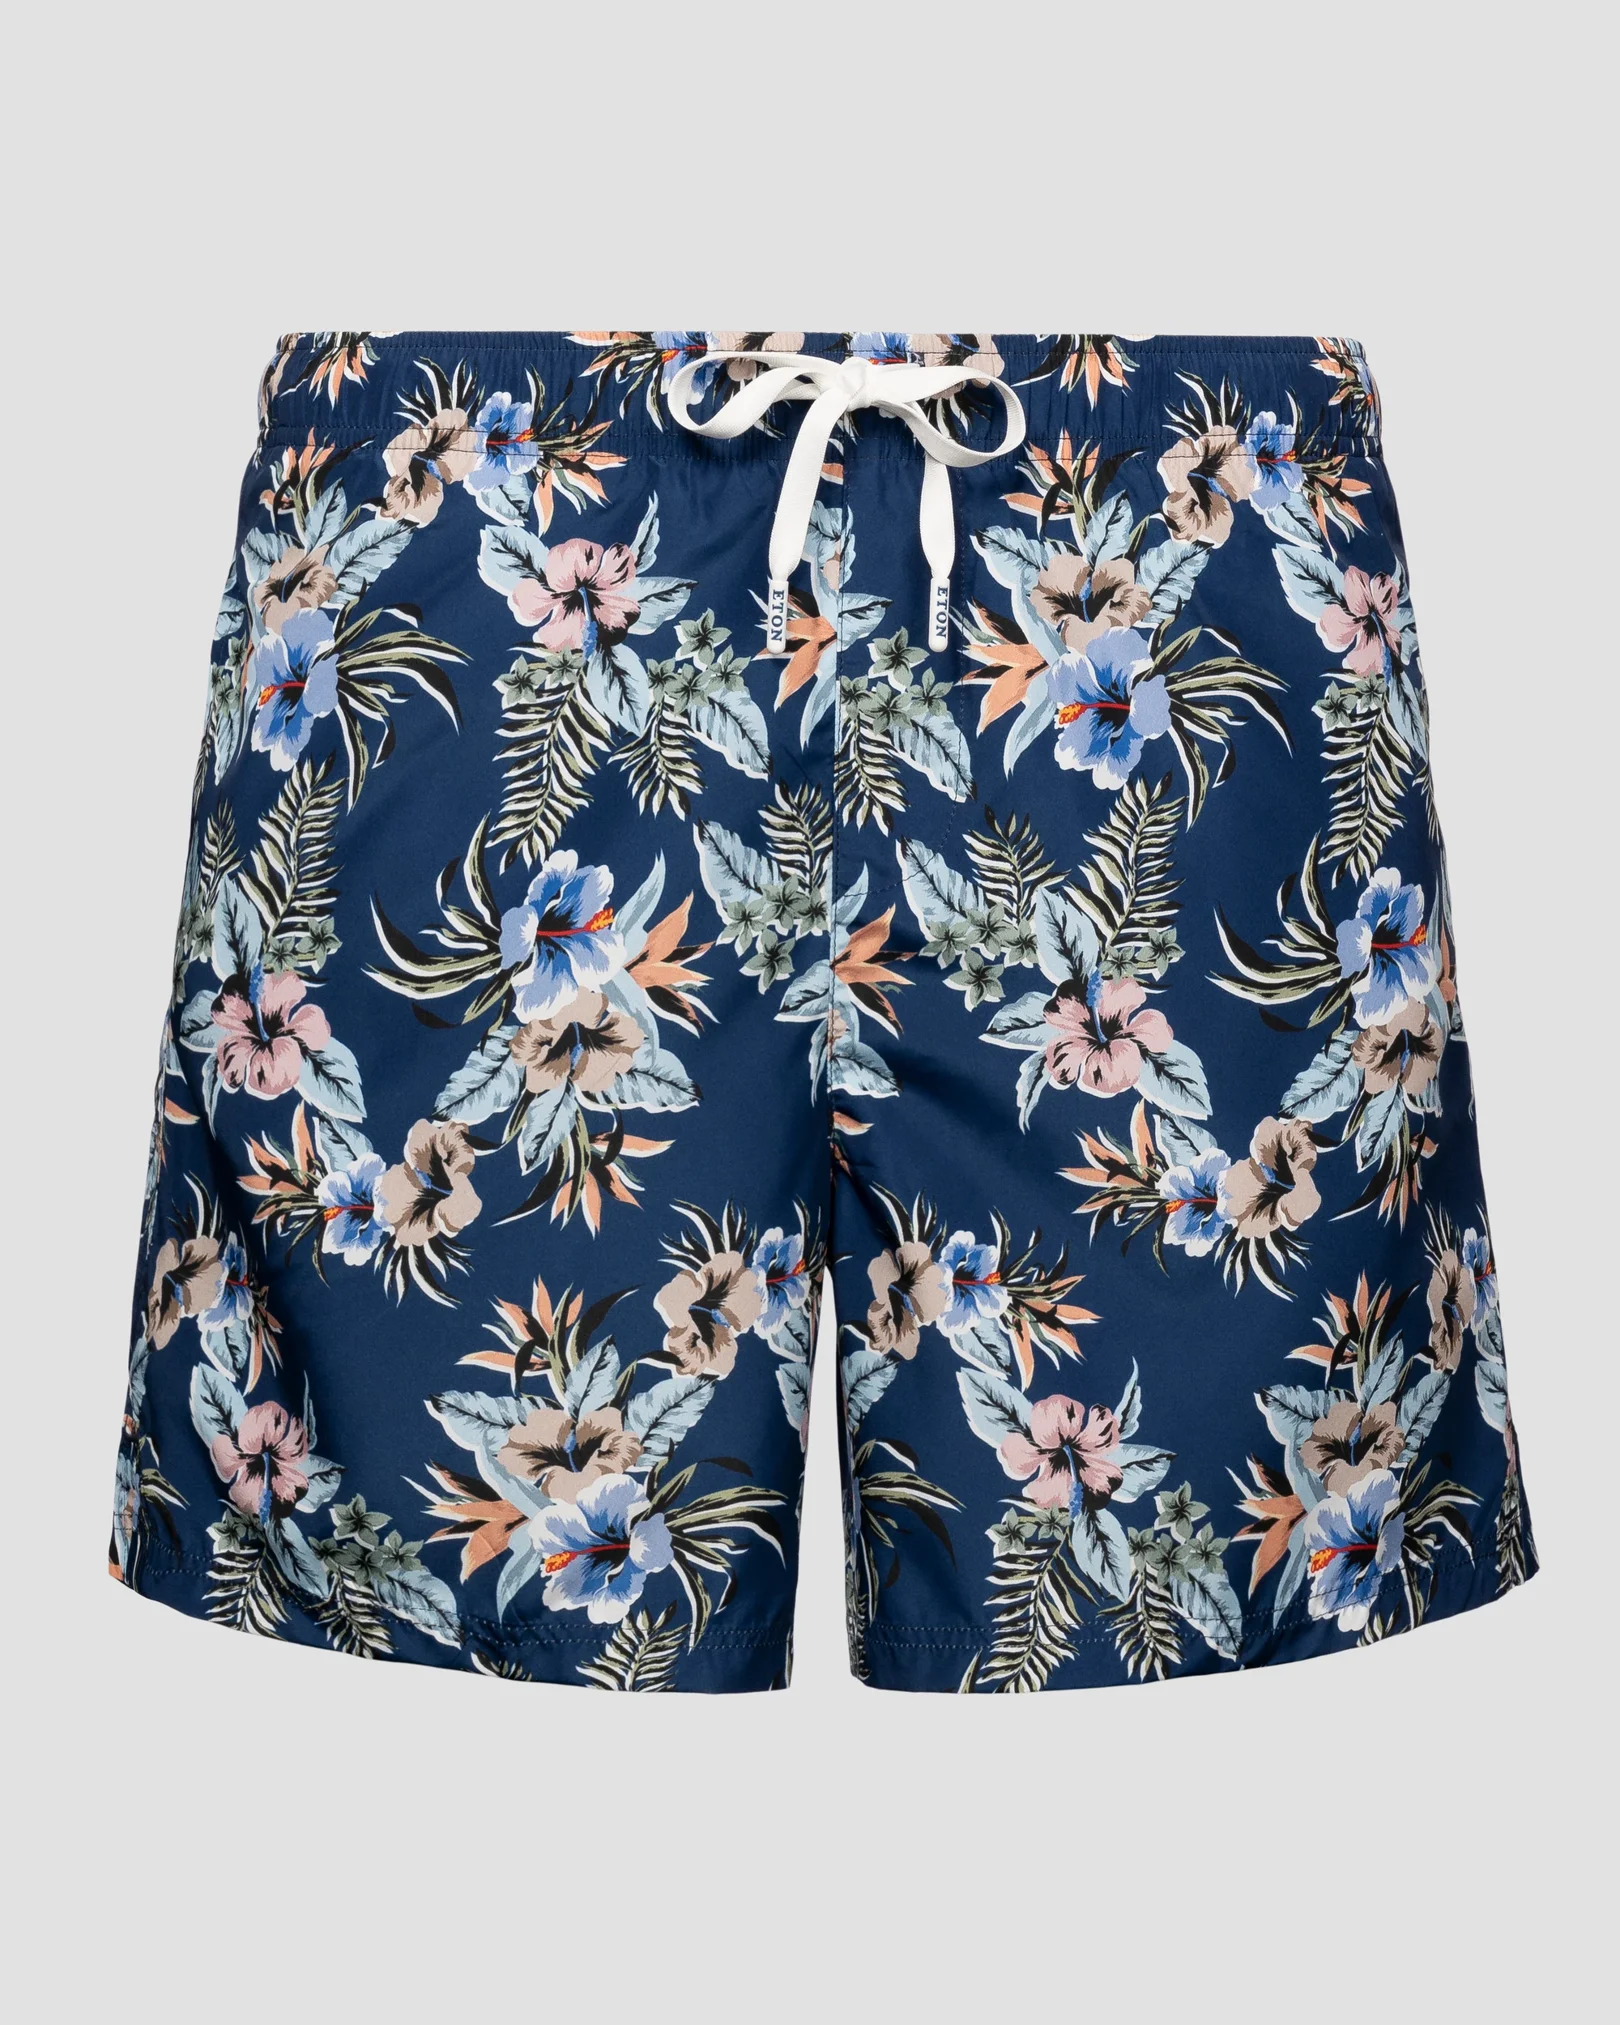 Eton - dark blue floral swim shorts